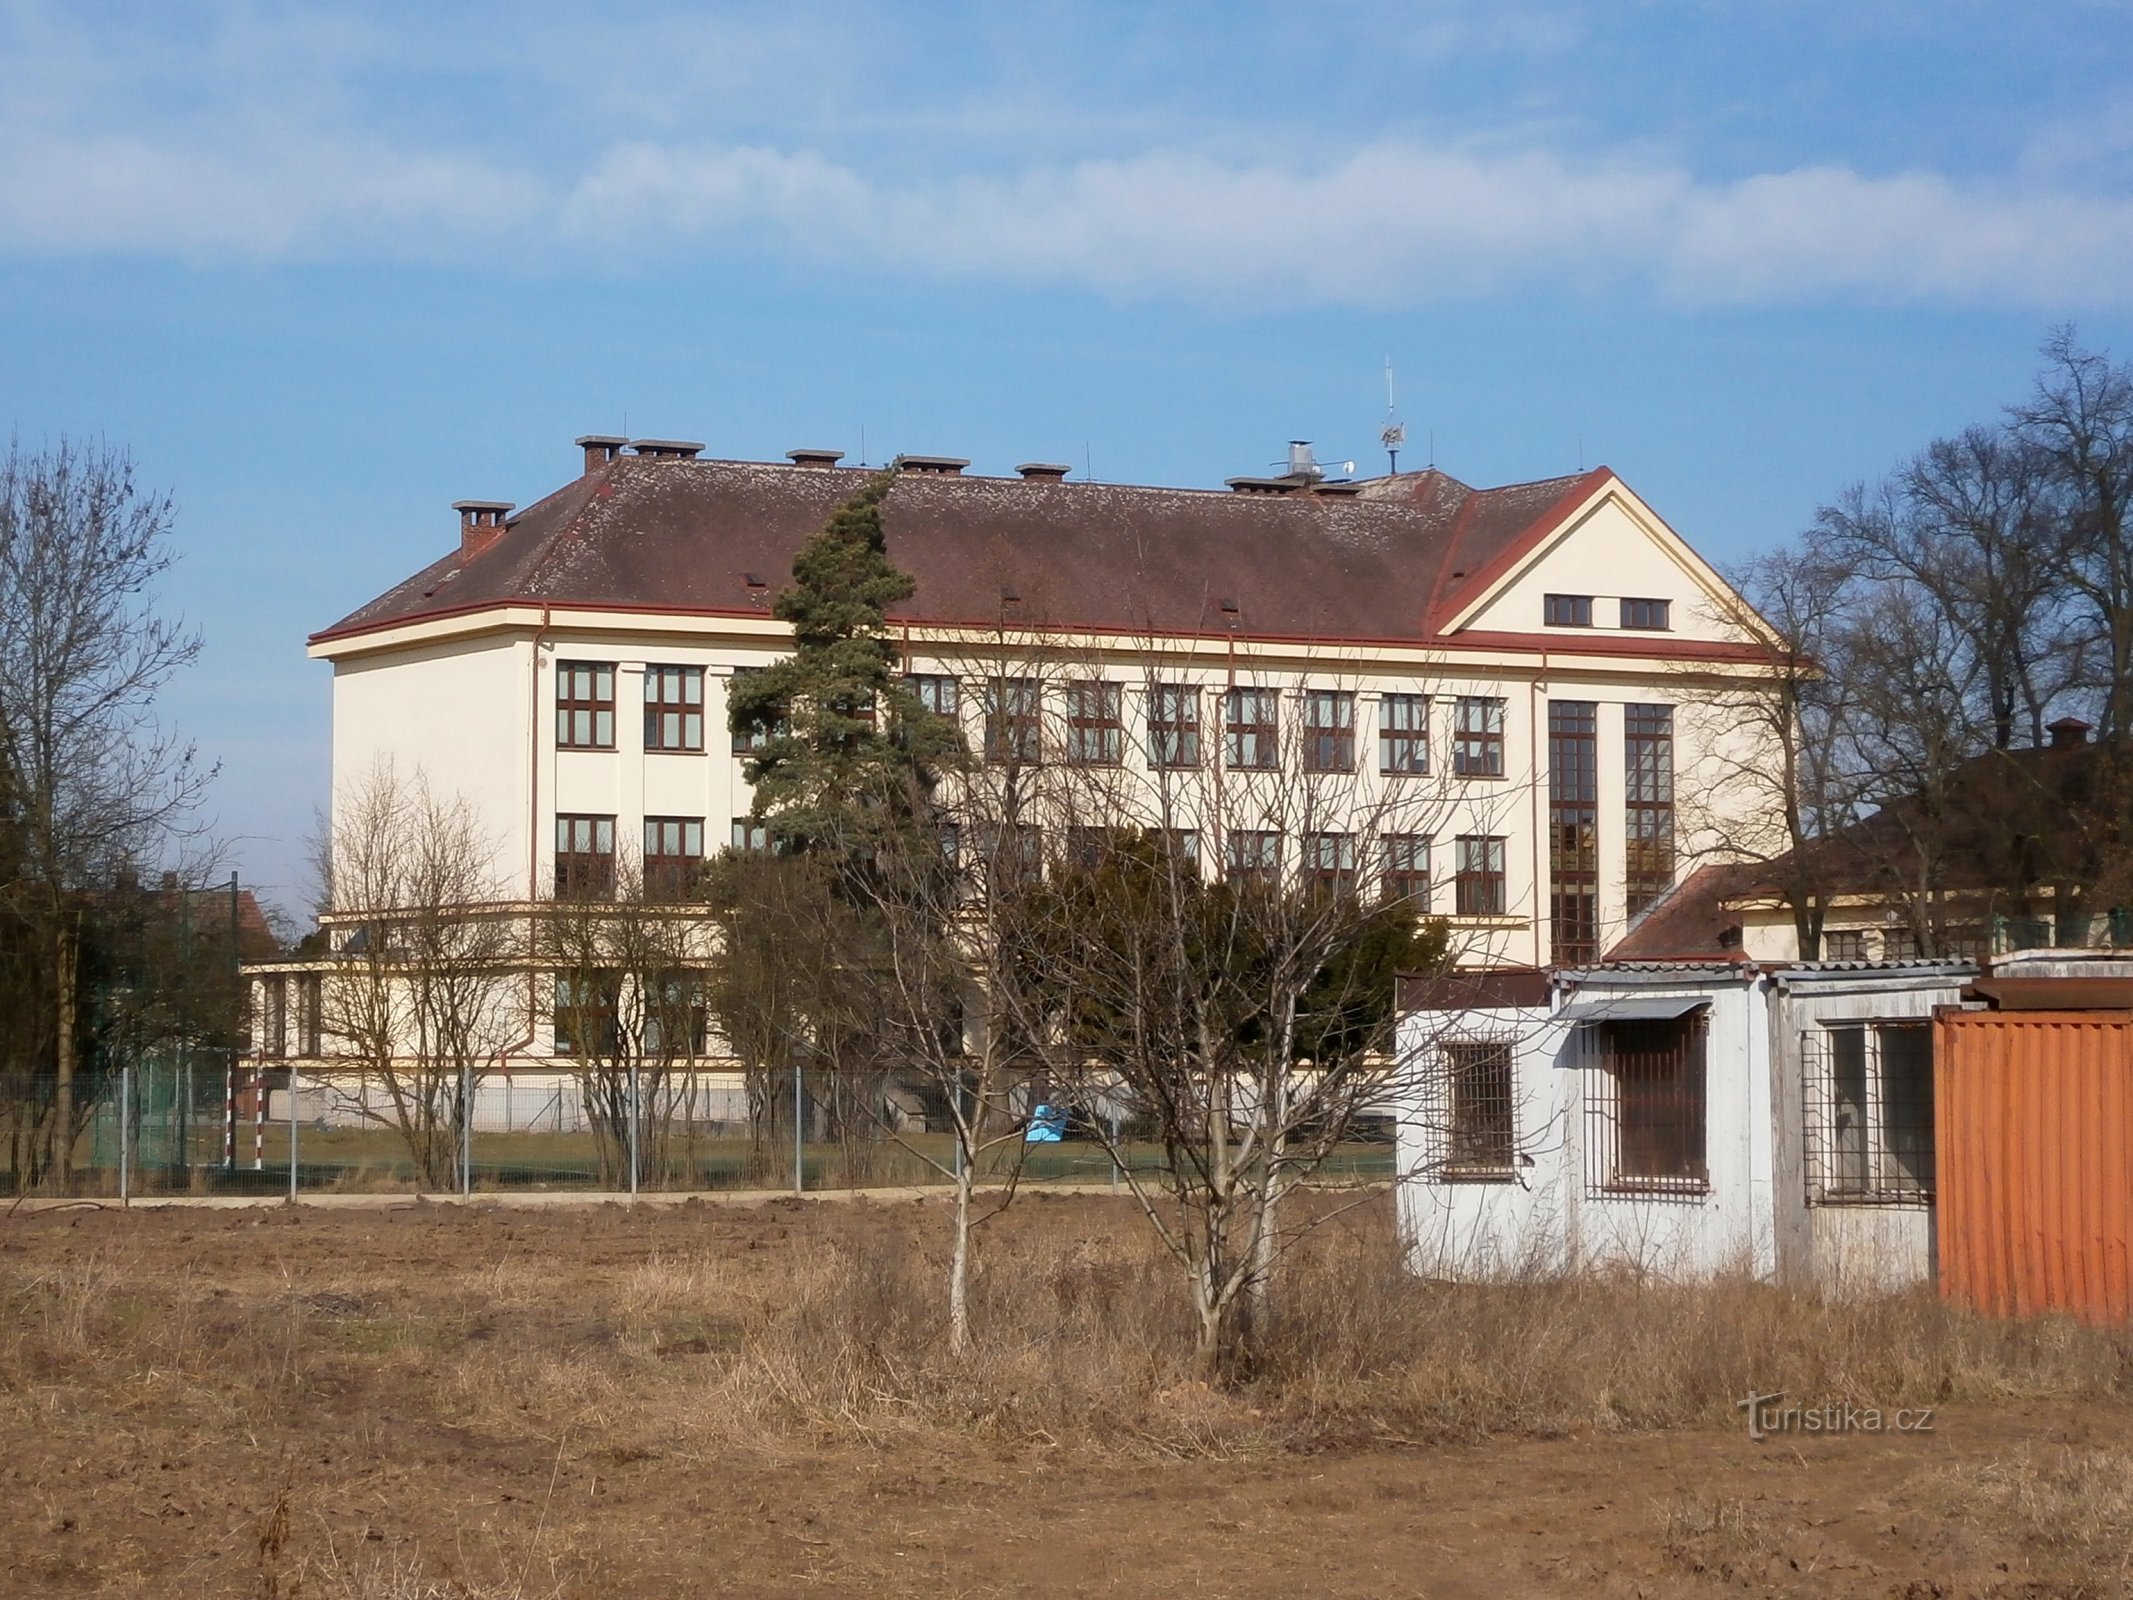 Masarykova osnovna šola v Plotiště nad Labem (Hradec Králové, 9.3.2015. XNUMX. XNUMX)